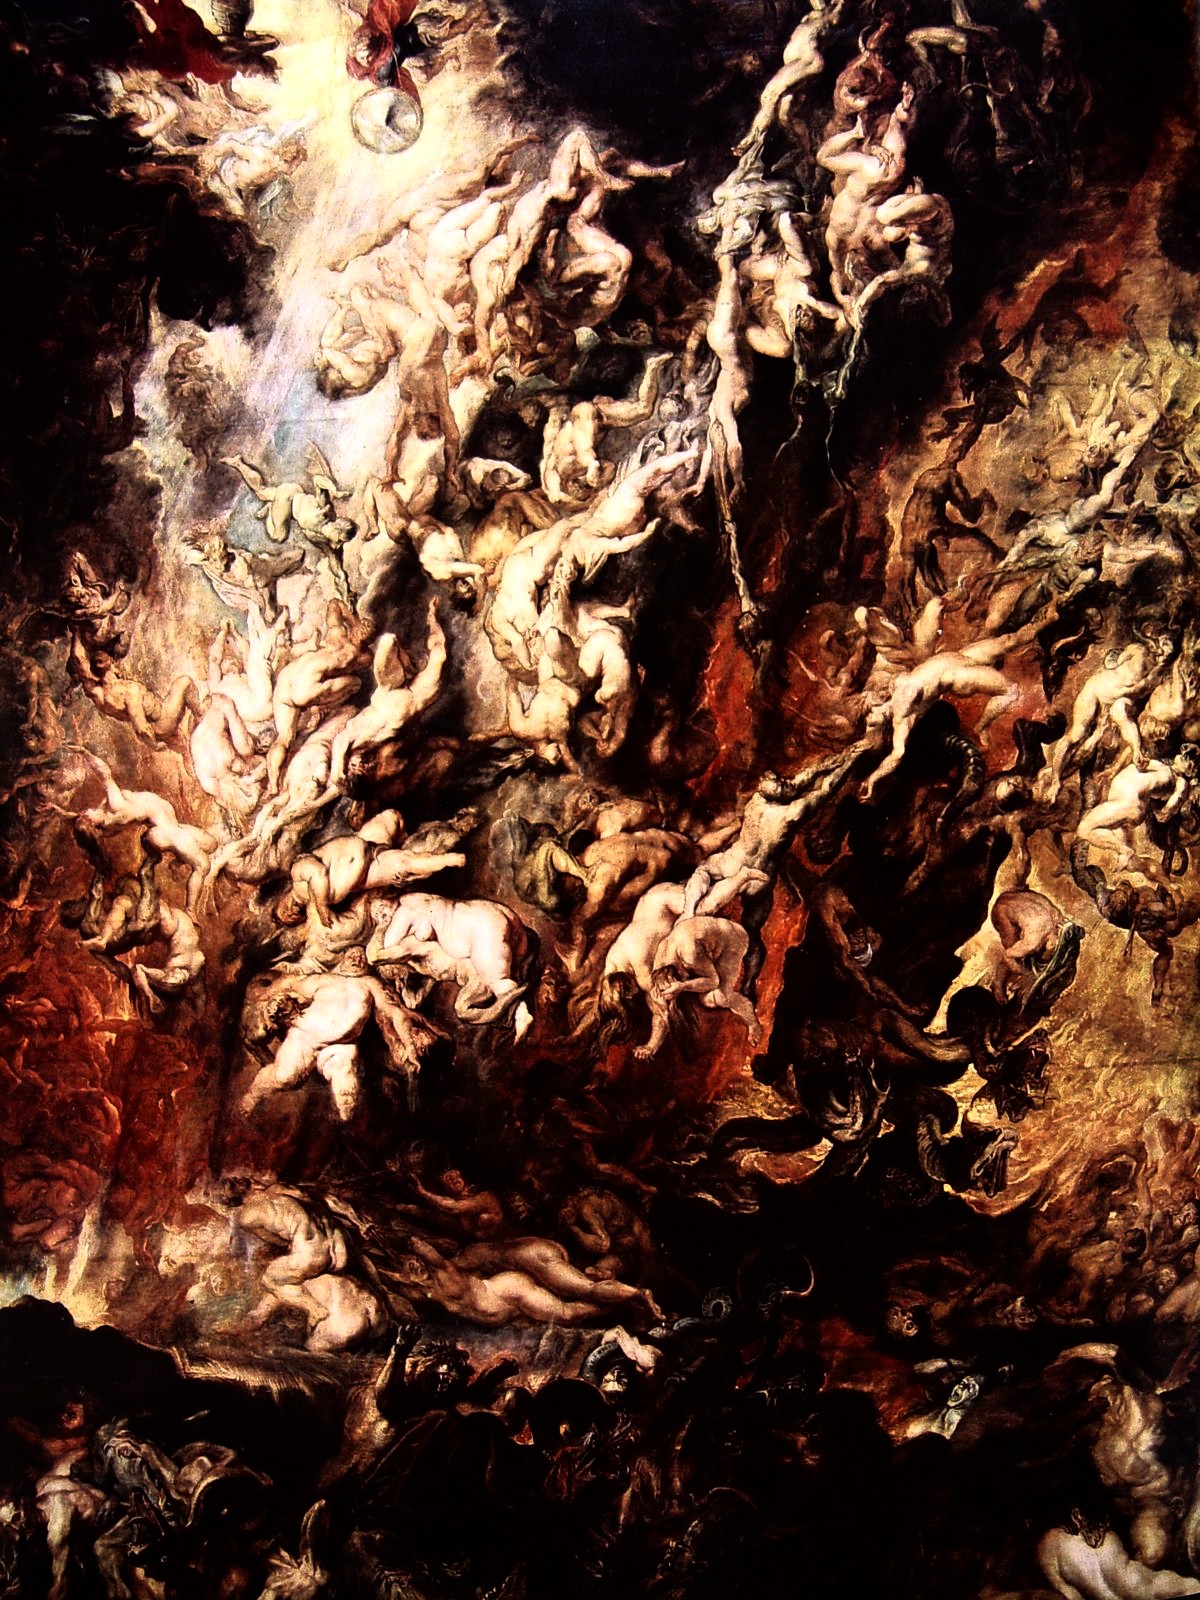 La caída de los condenados, de Rubens